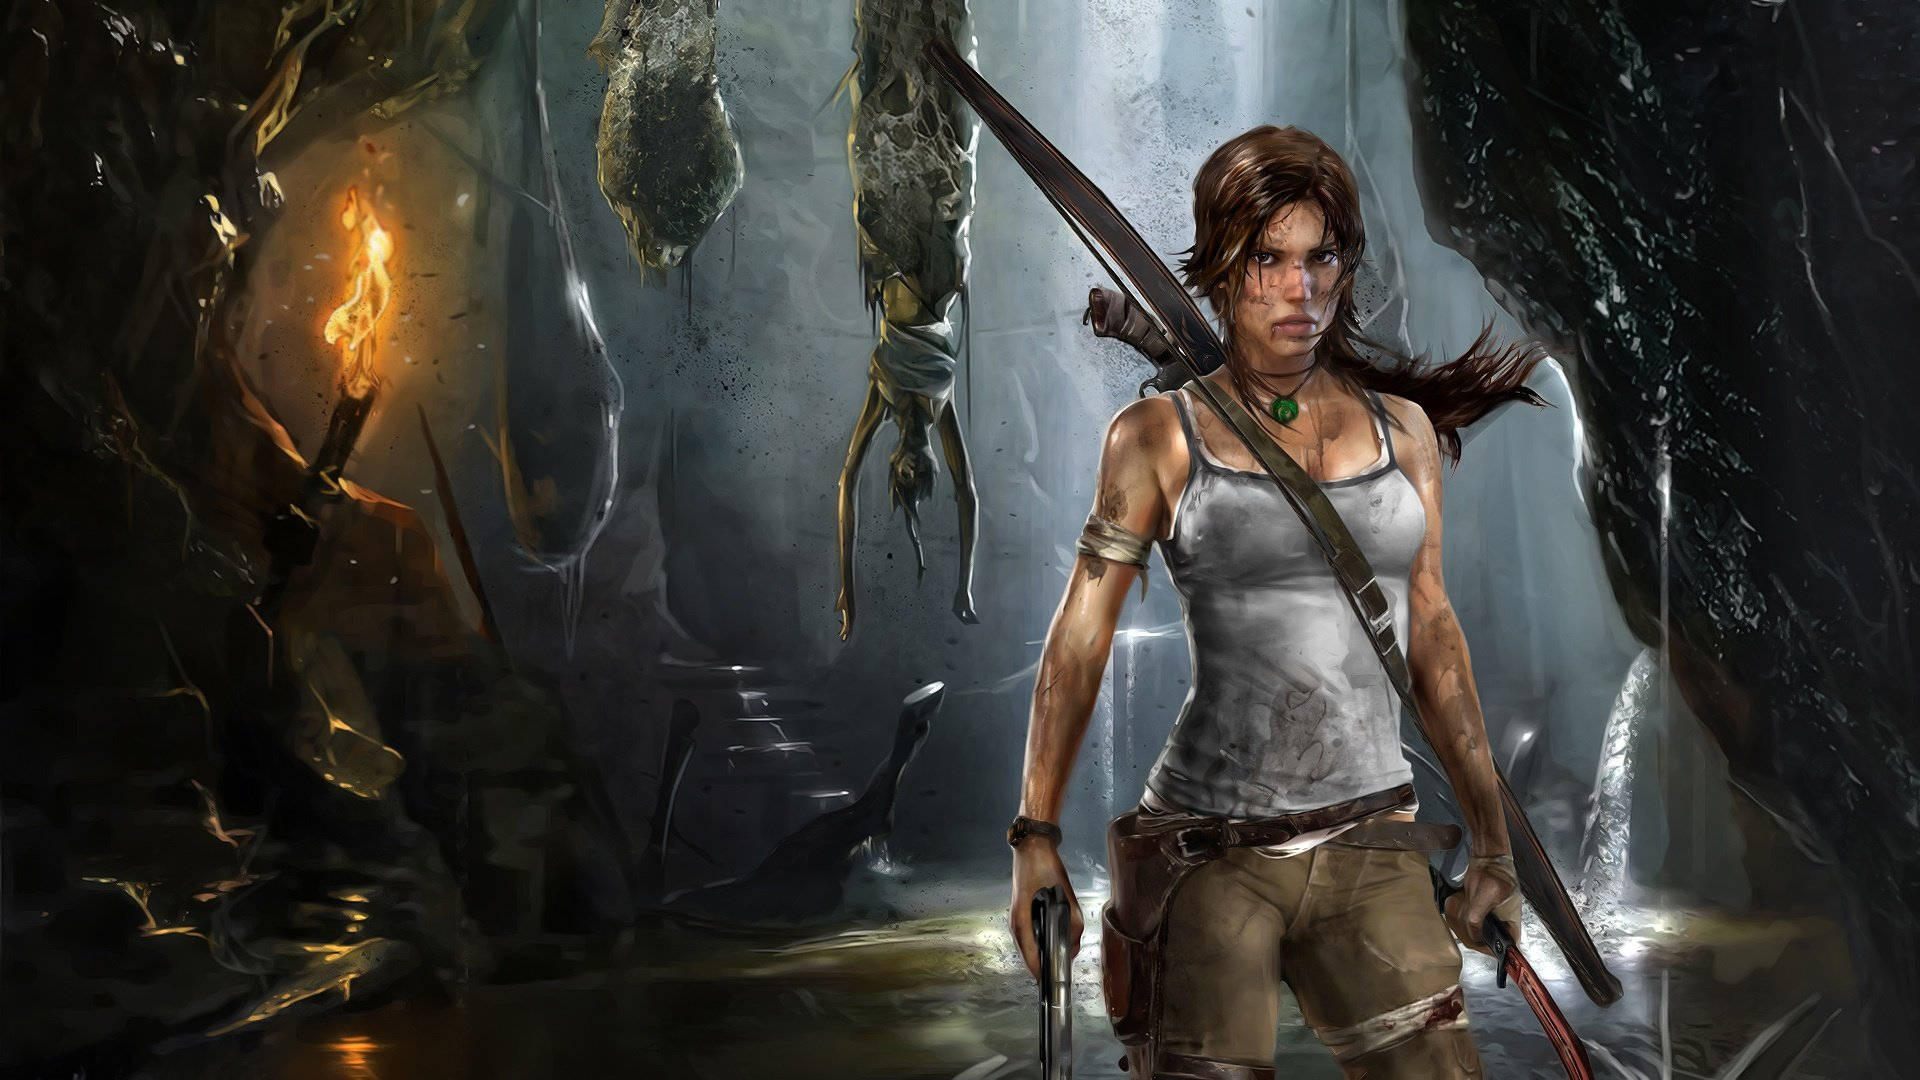 Laraassustadora Do Jogo Tomb Raider Papel de Parede